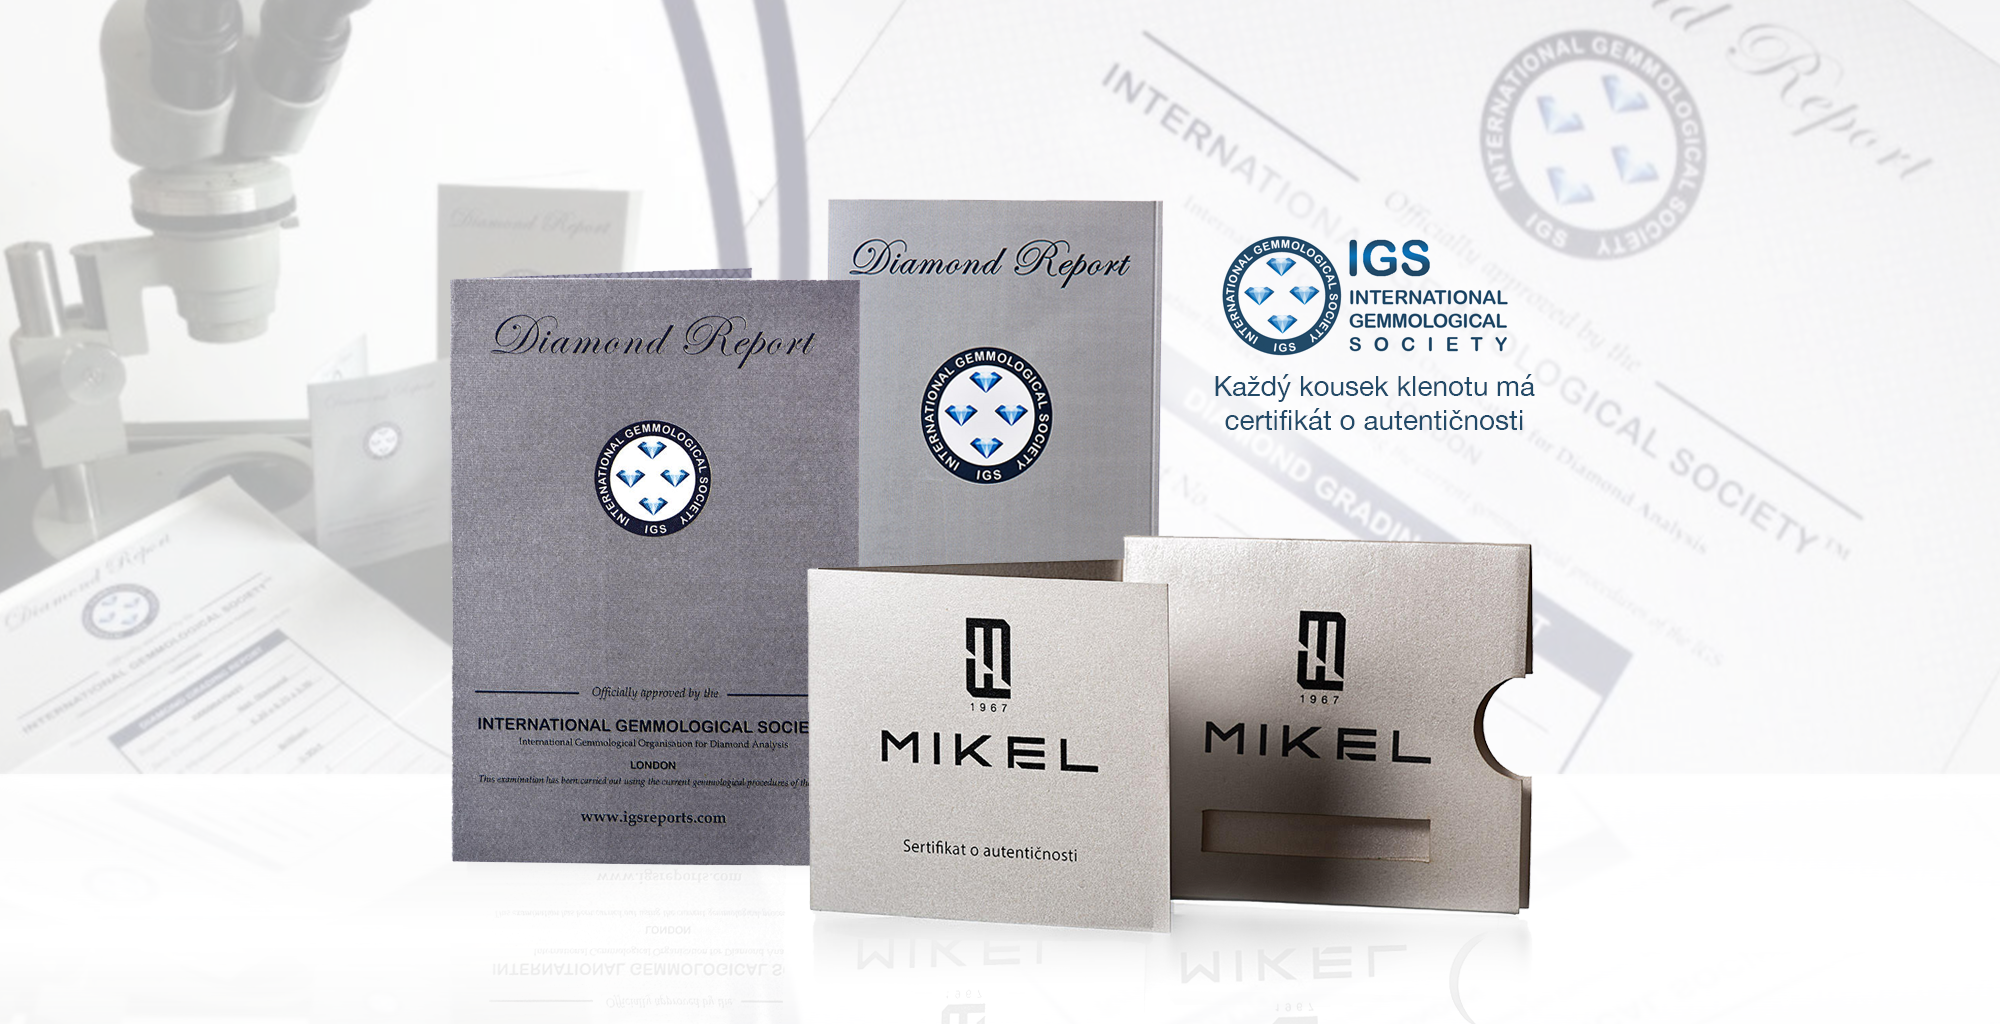 Mikel F Diamond Centar- každý kus jeho šperku který nabízí má certifikát o autentičnosti.